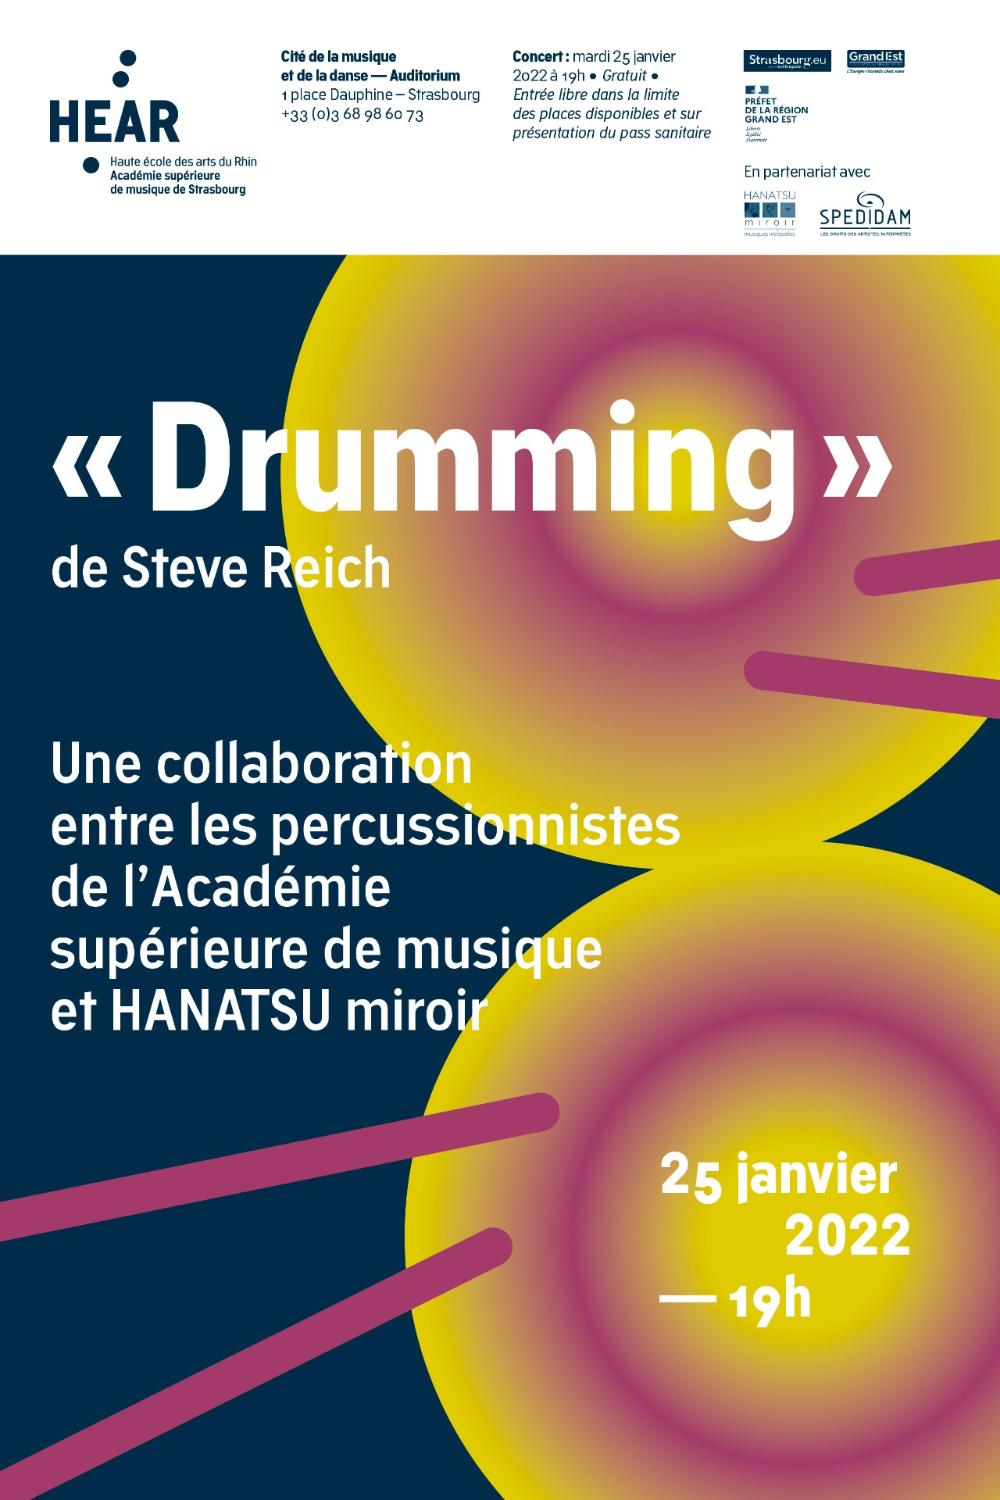 Drumming de Steve Reich